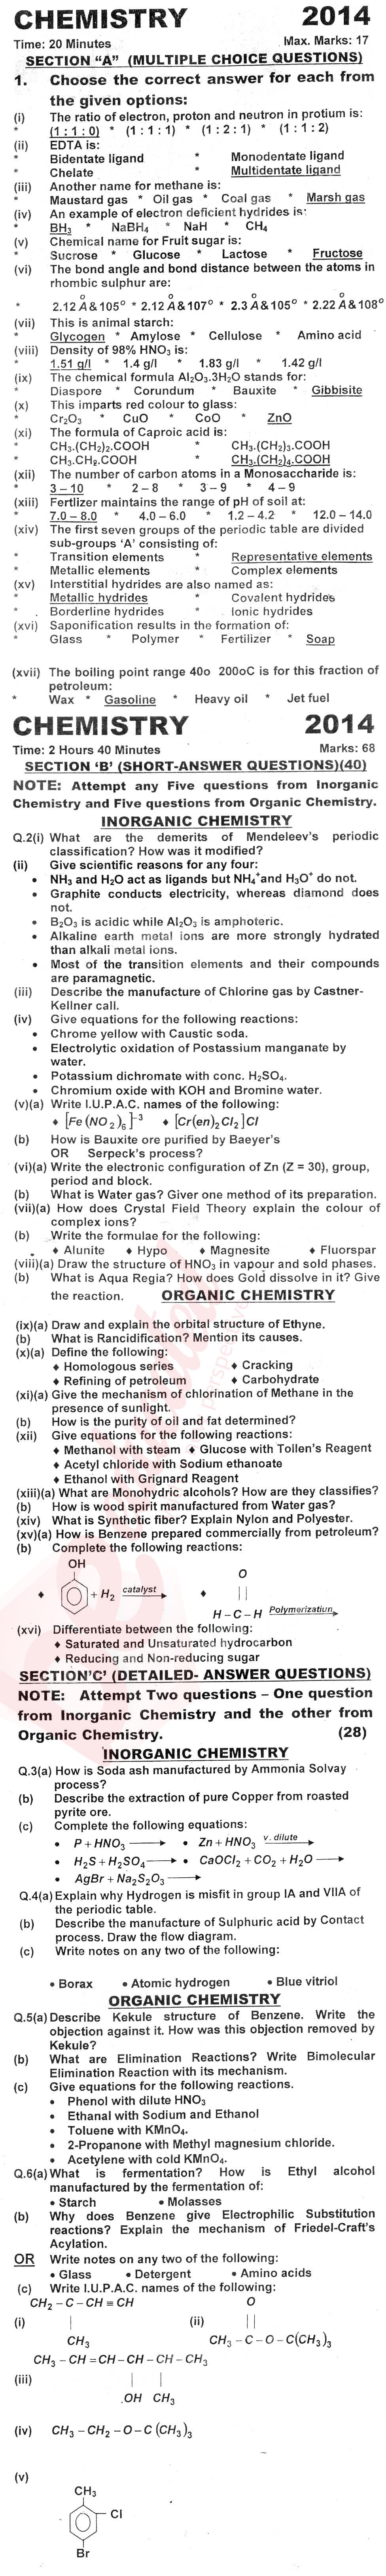 Chemistry FSC Part 2 Past Paper Group 1 KPBTE 2014